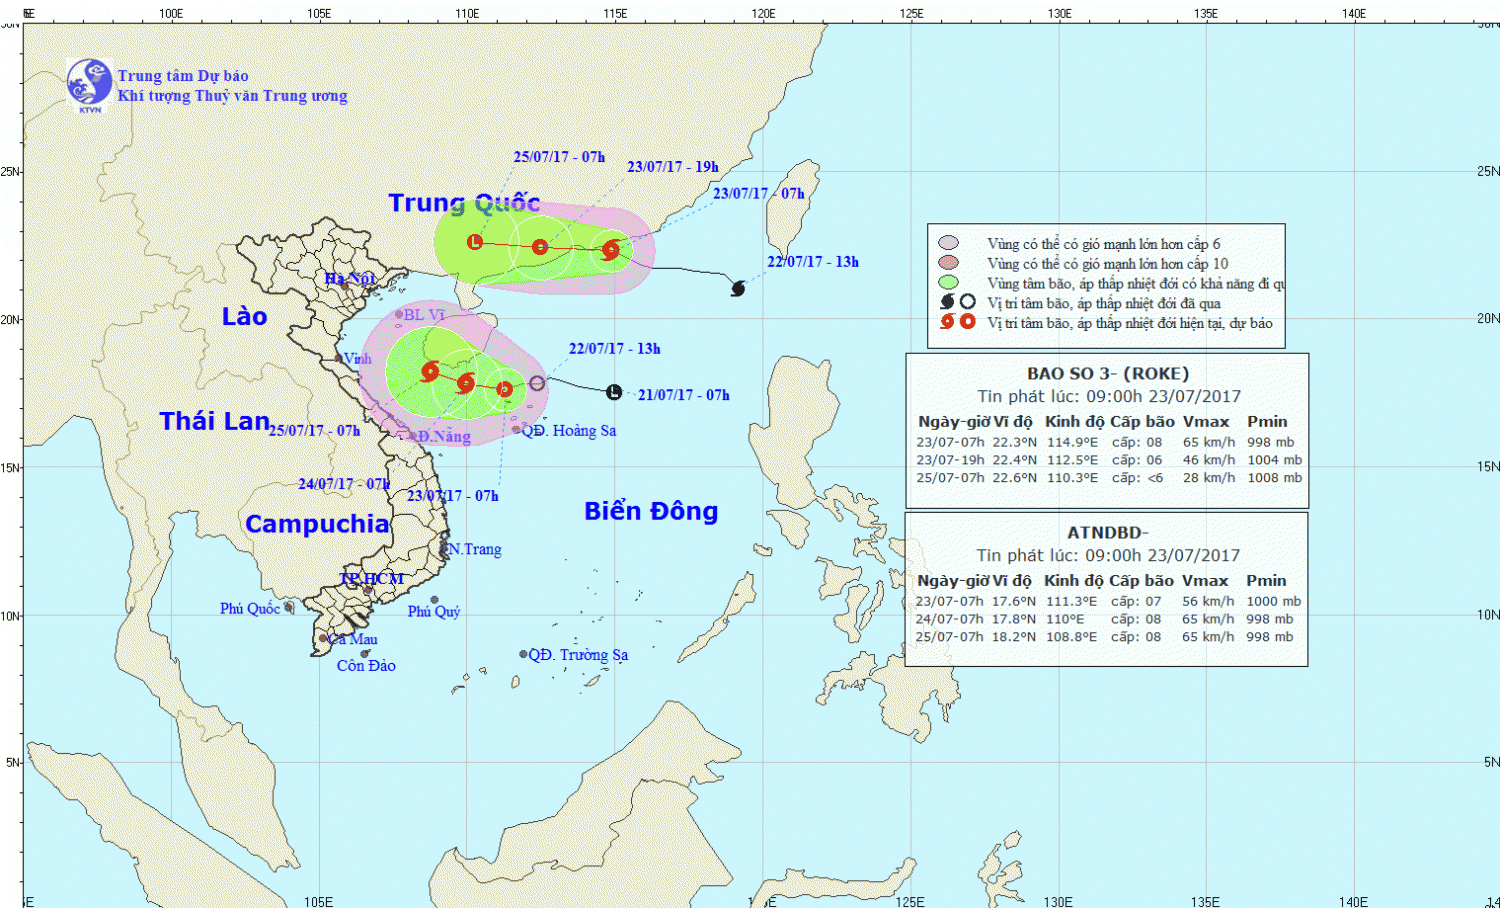 Tin áp thấp nhiệt đới trên Biển Đông và tin bão trên Biển Đông (bão số 3)